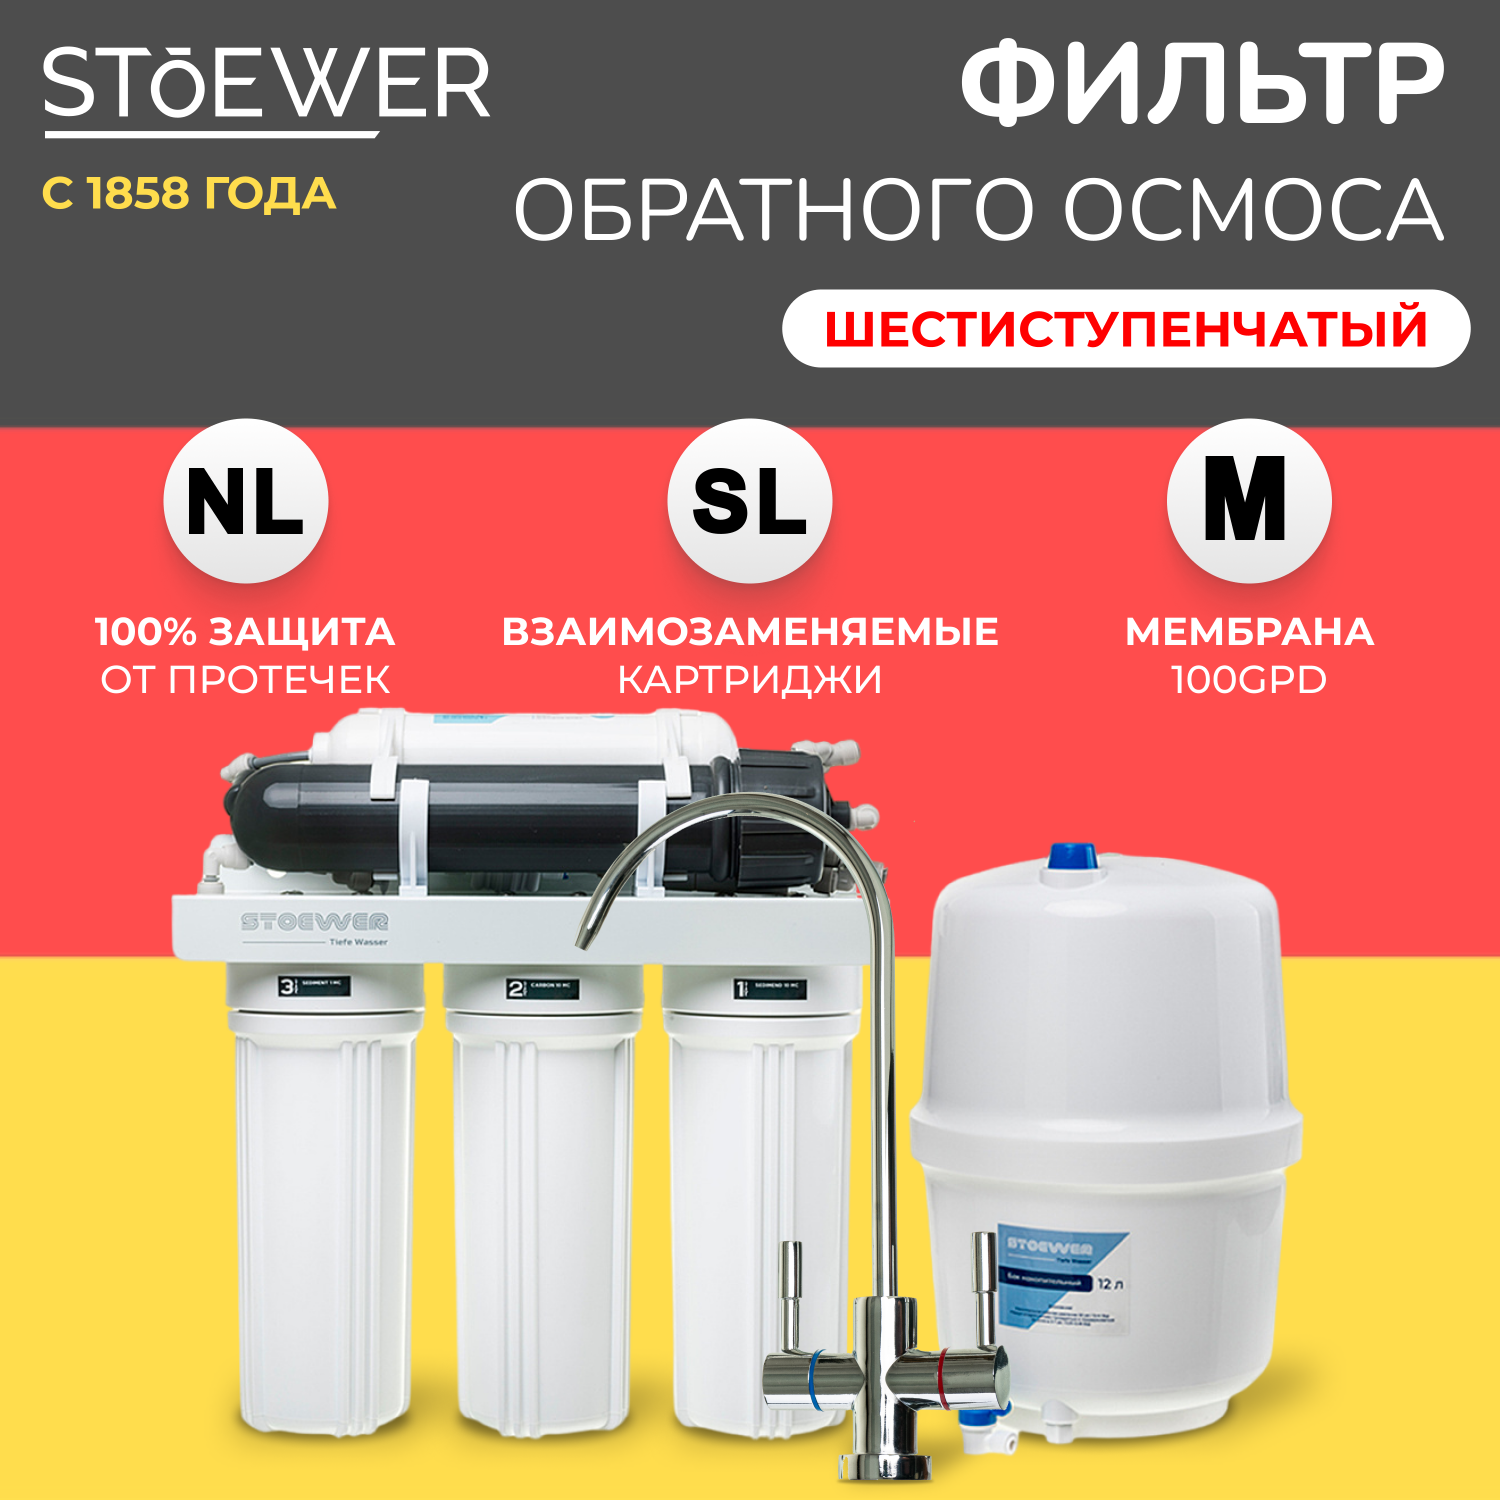 Фильтр обратного осмоса Stoewer RO-675 -  , цены на .